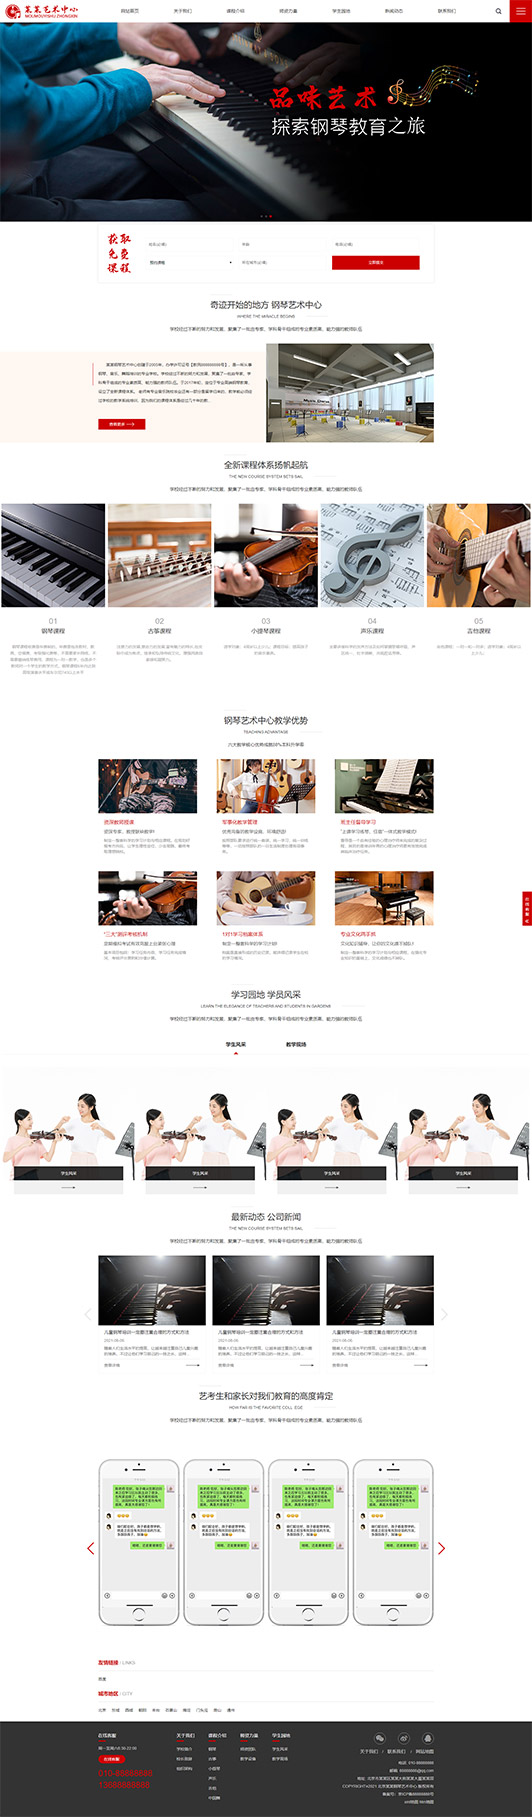 肇庆钢琴艺术培训公司响应式企业网站